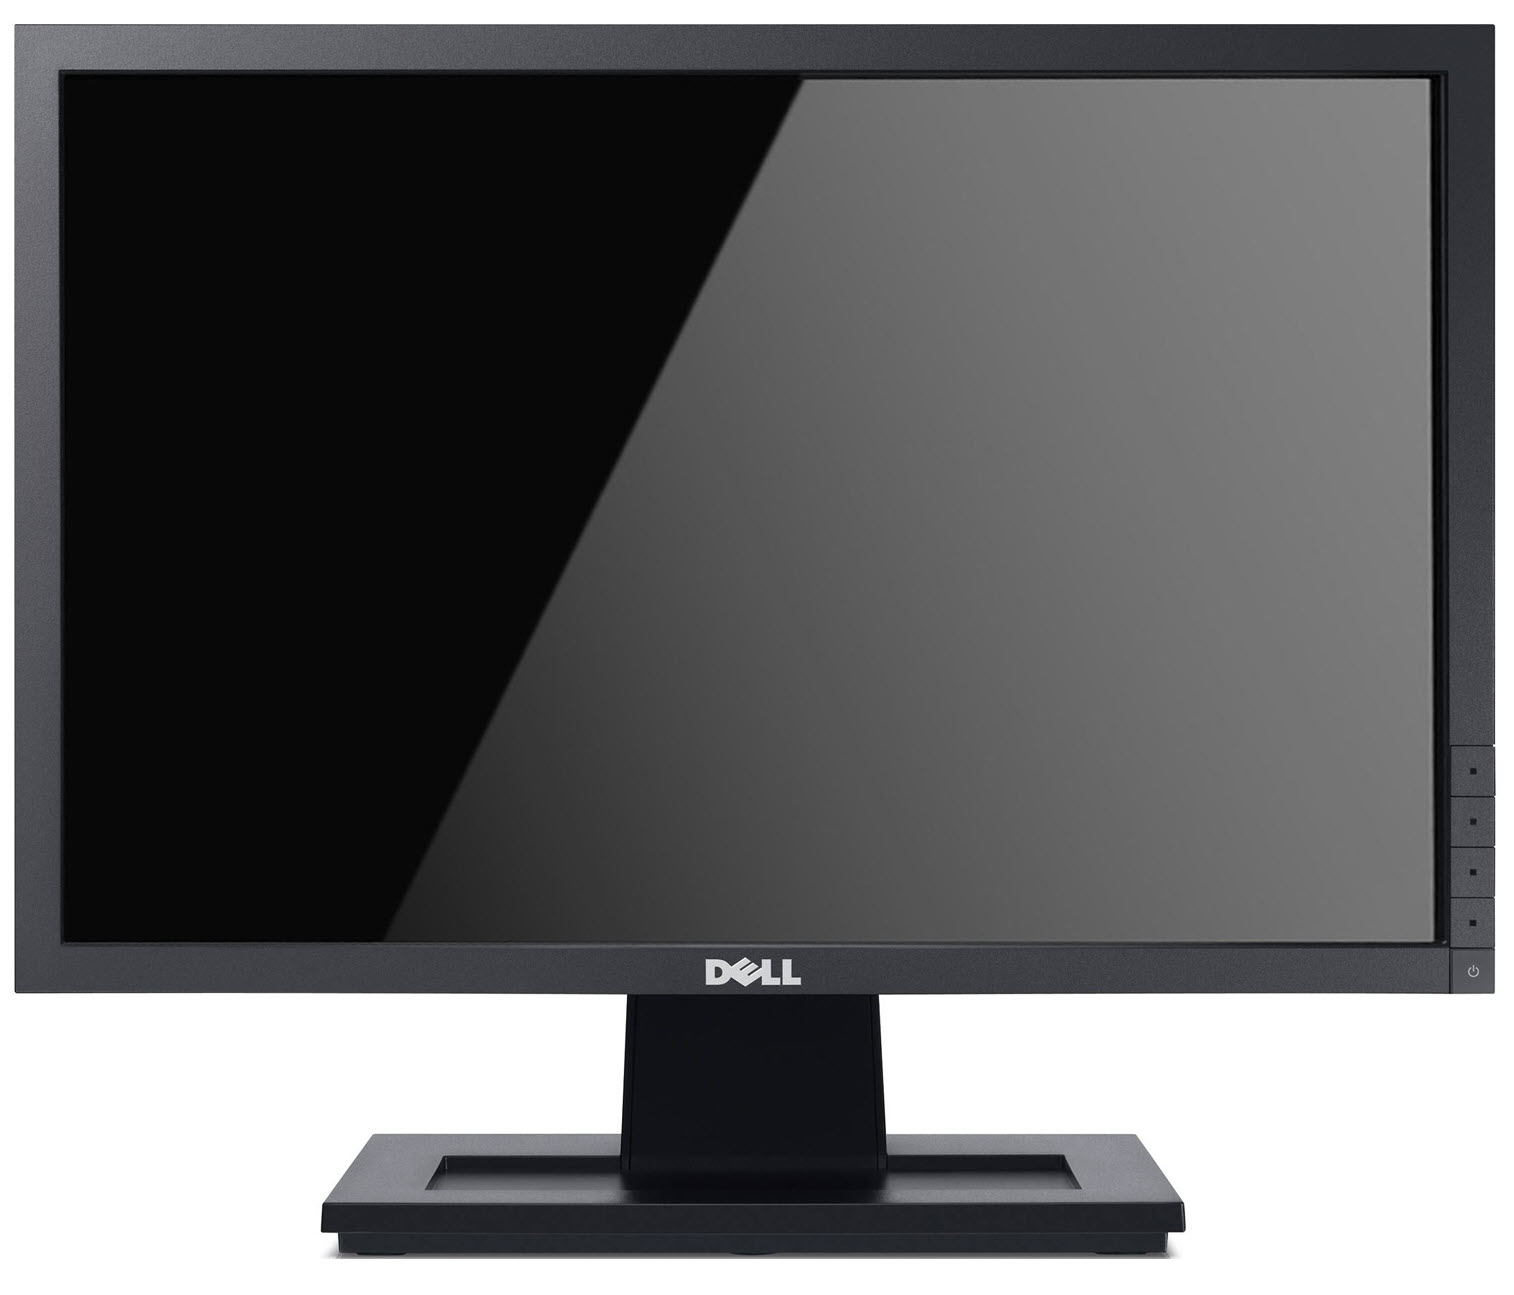 Dell E1911 LCD Monitor